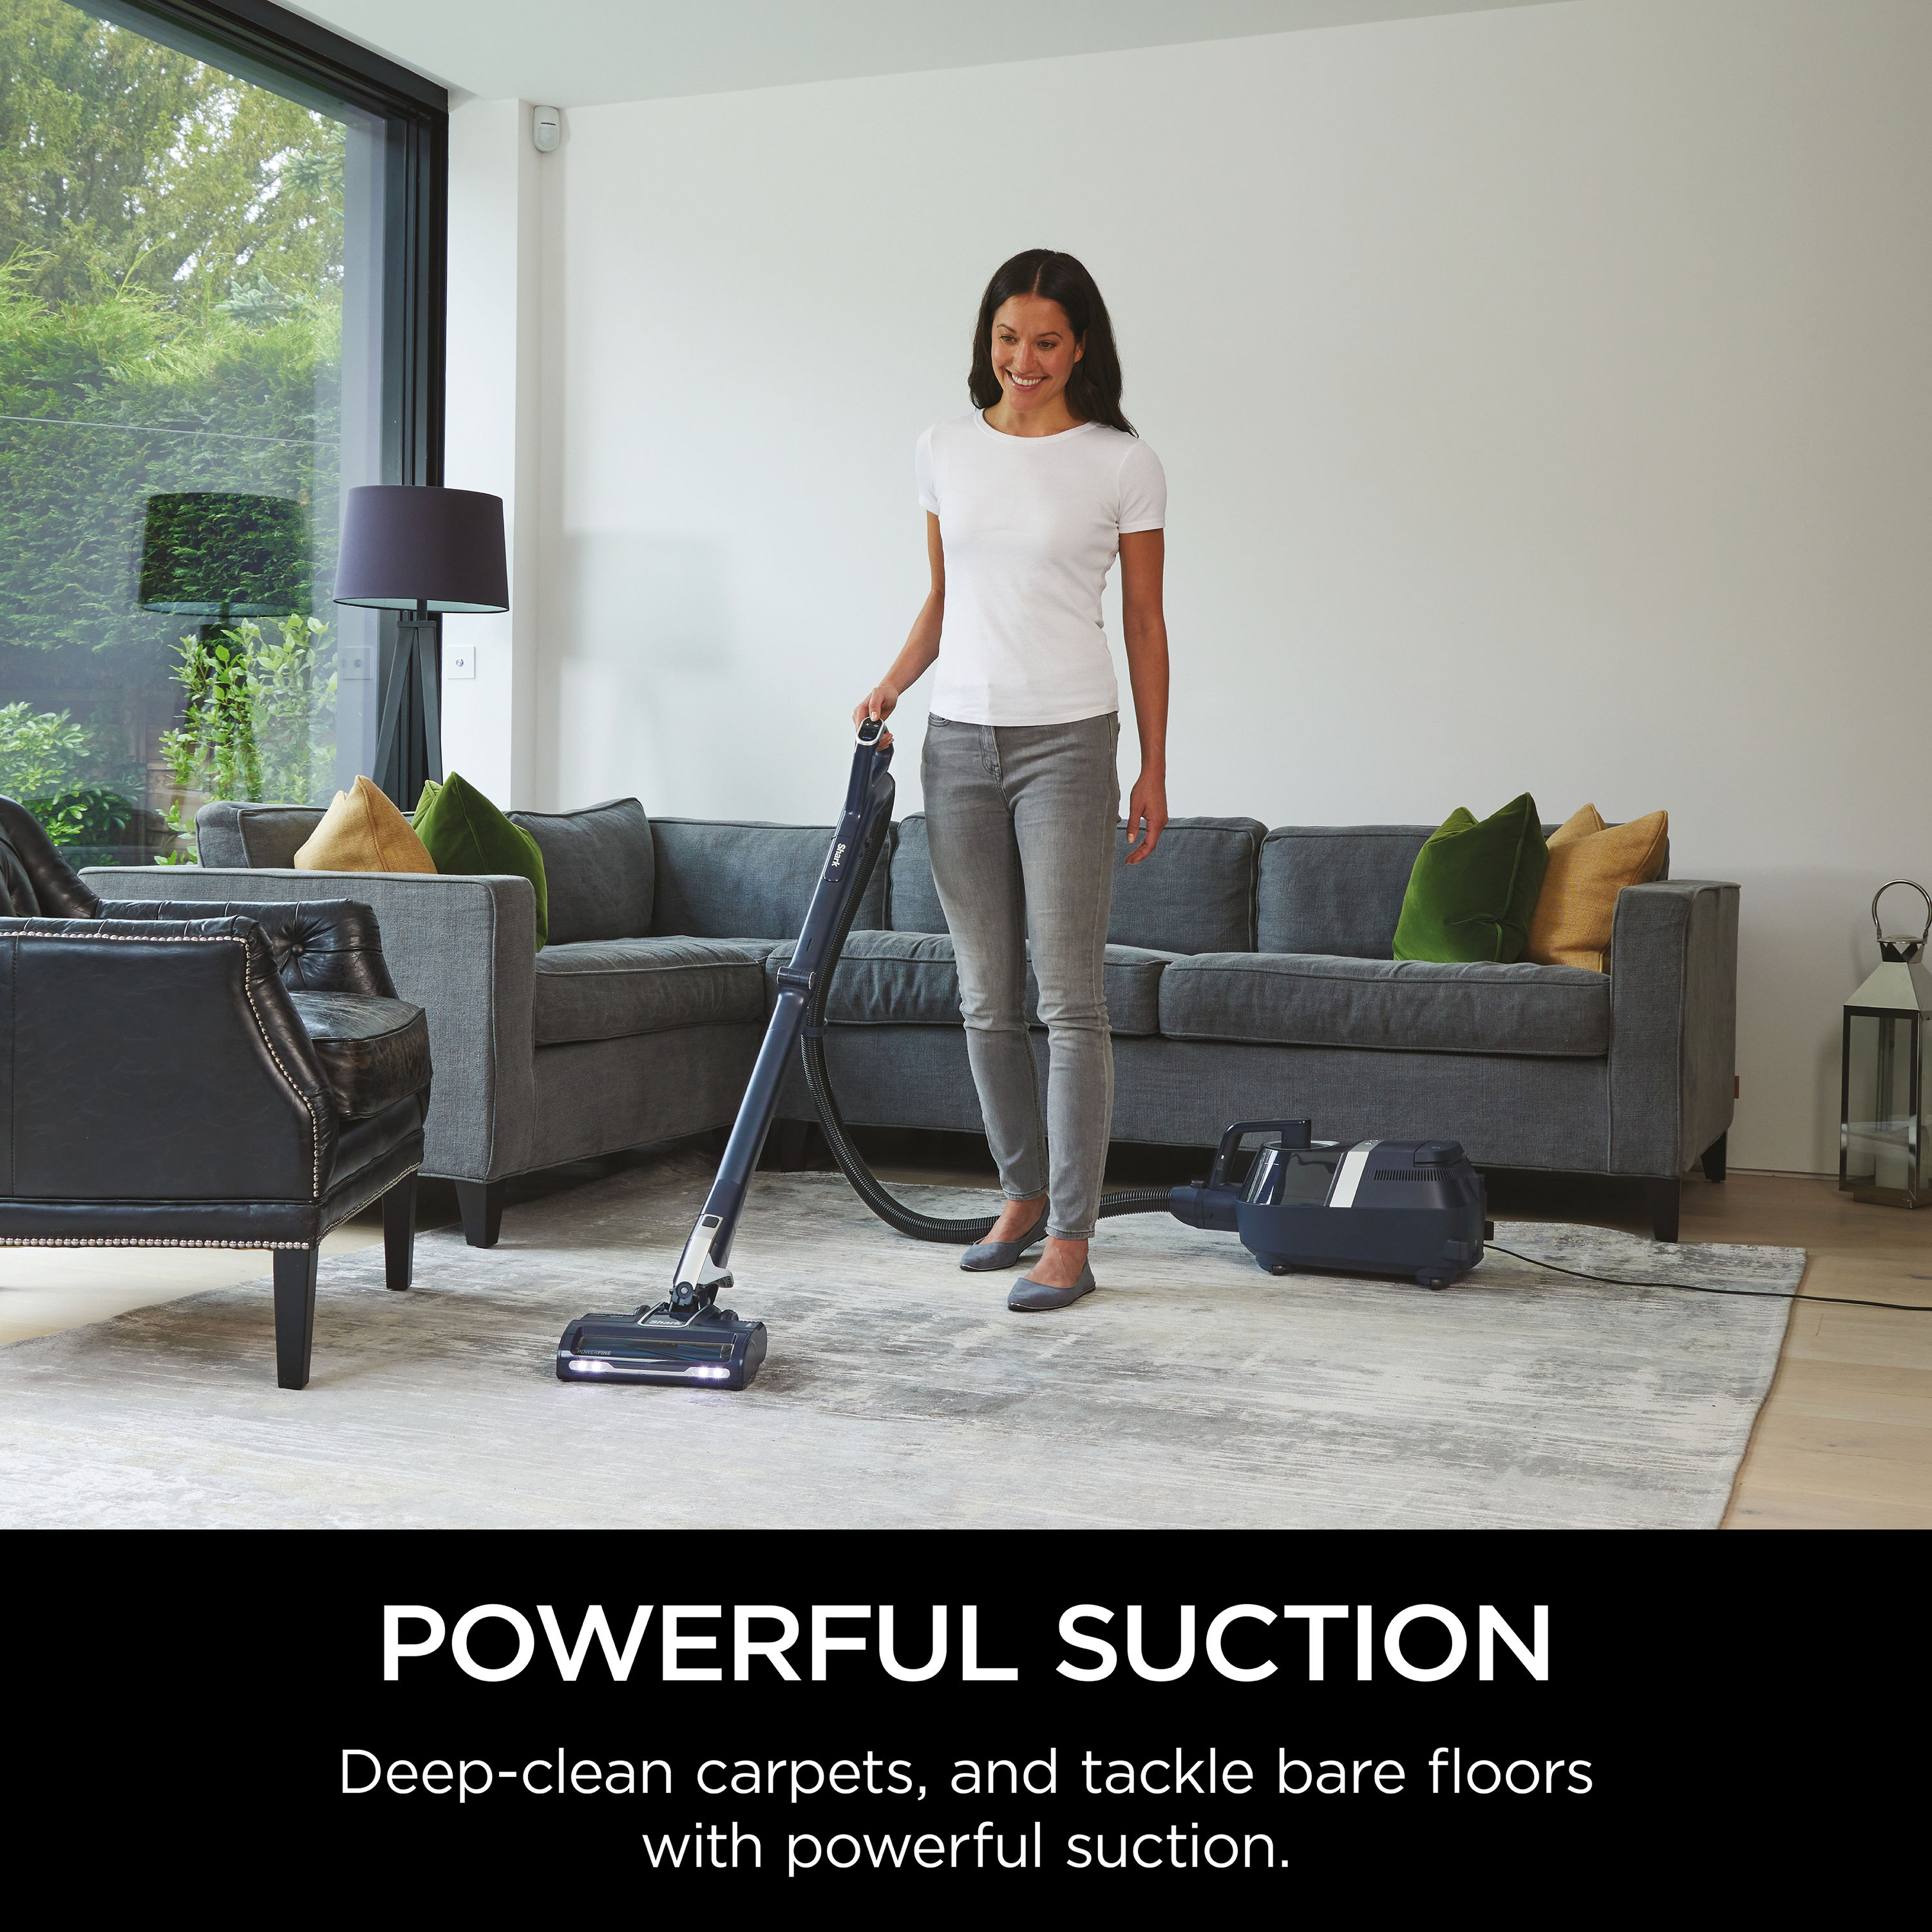 Alipis 36 Pcs Furniture Non-Slip mat Floor Protector Rubber Feet Protector  Non Skid Furniture Pad Furniture Leg pad Silicone Table Protector Sofa